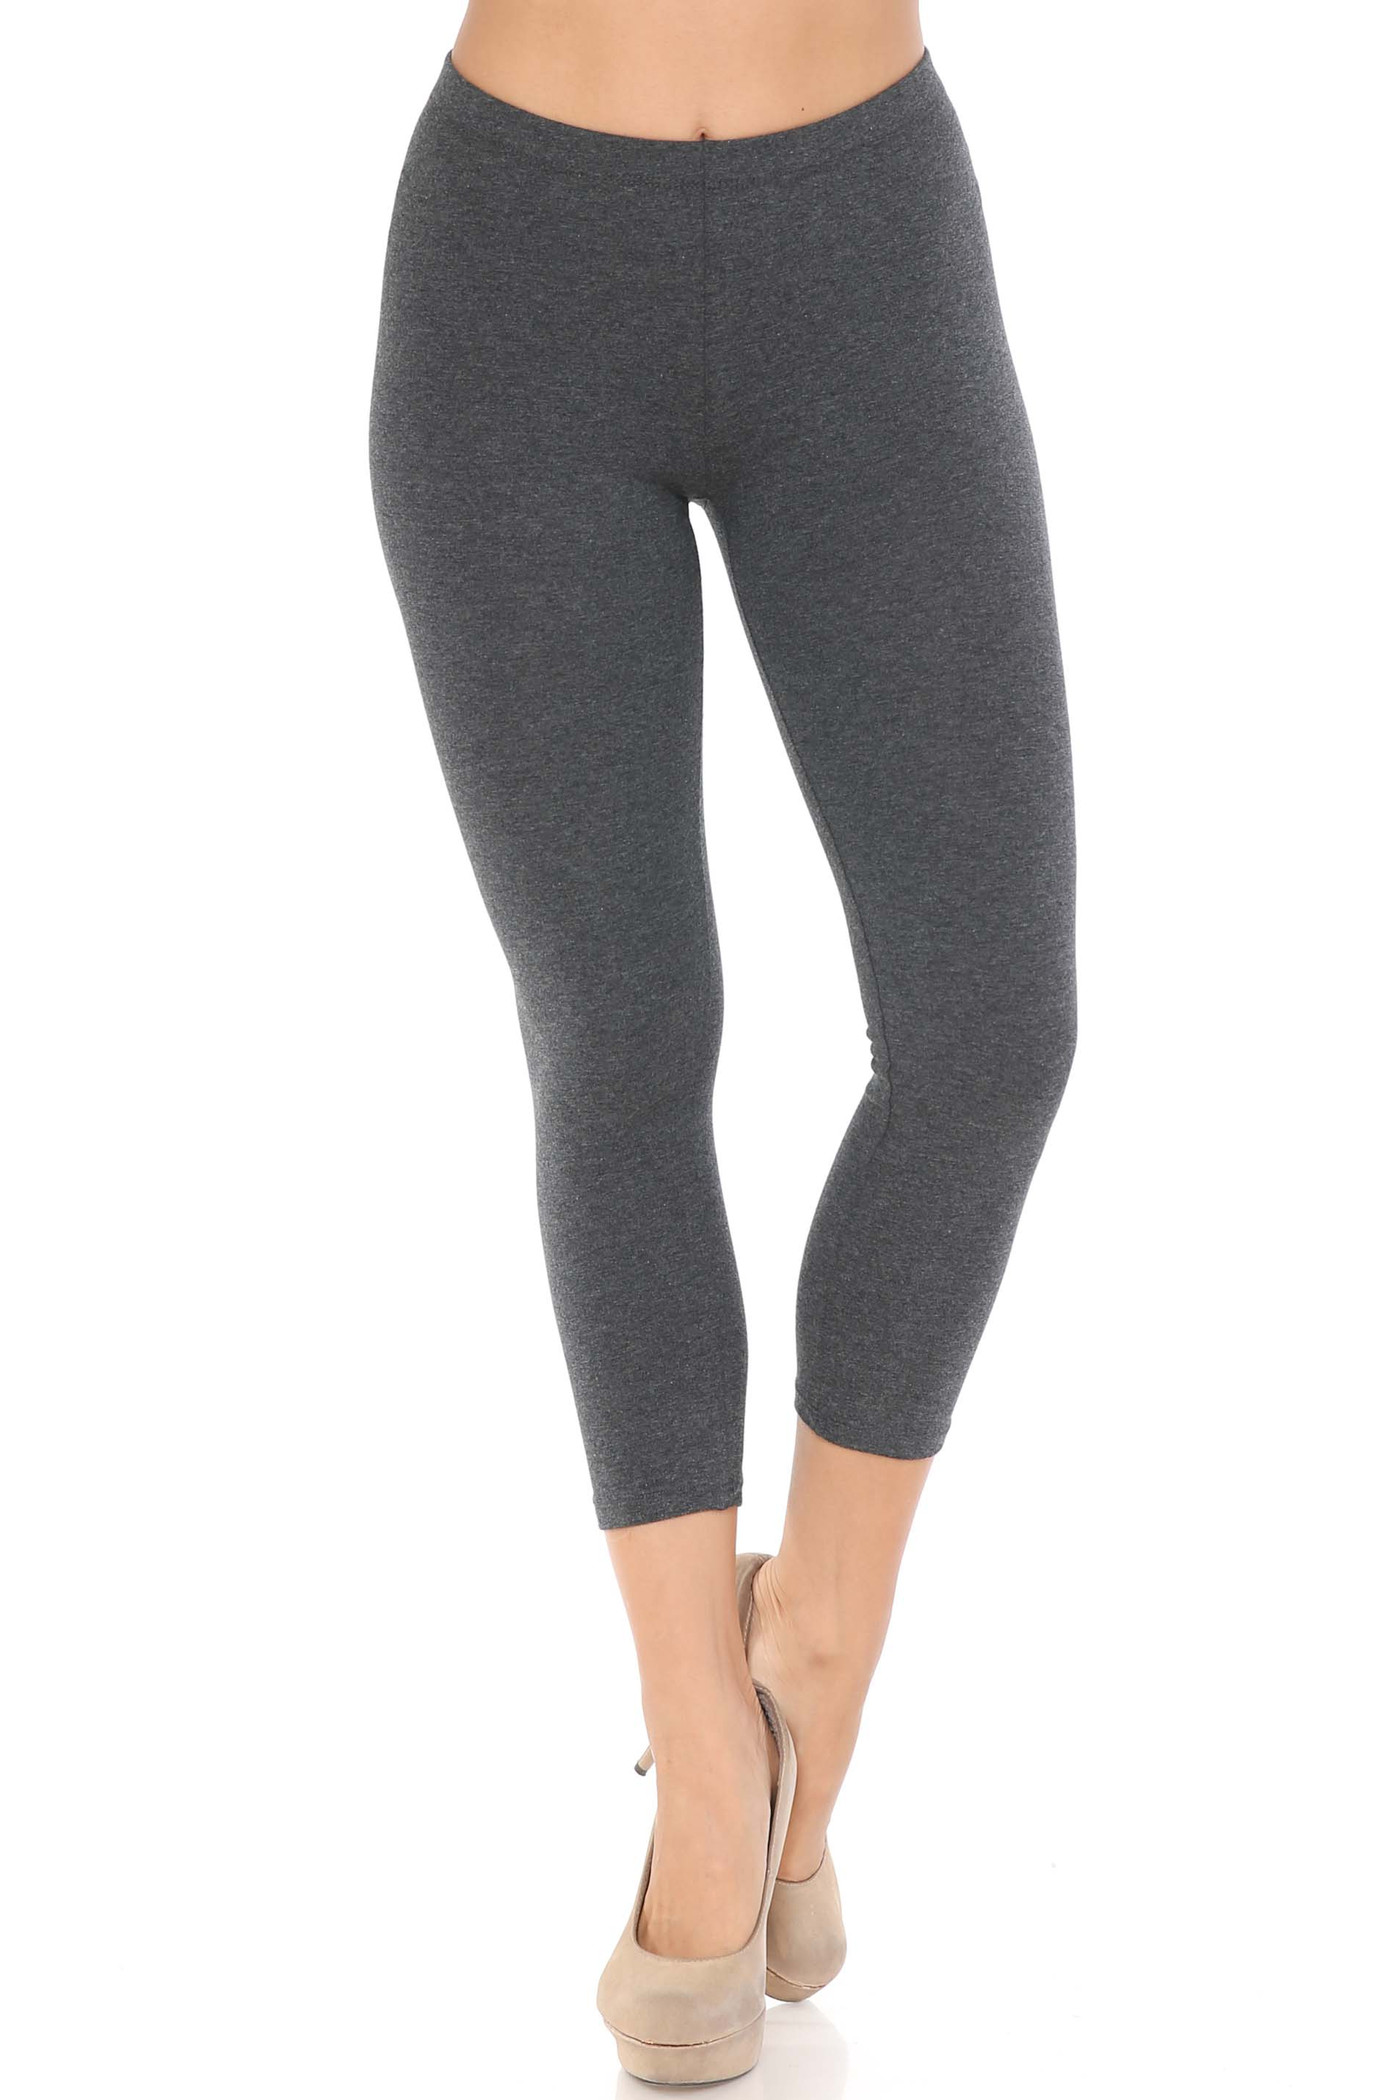 leggings for women cotton capri length : Premium Ultra Soft Leggings for  Women in 25 Colors 